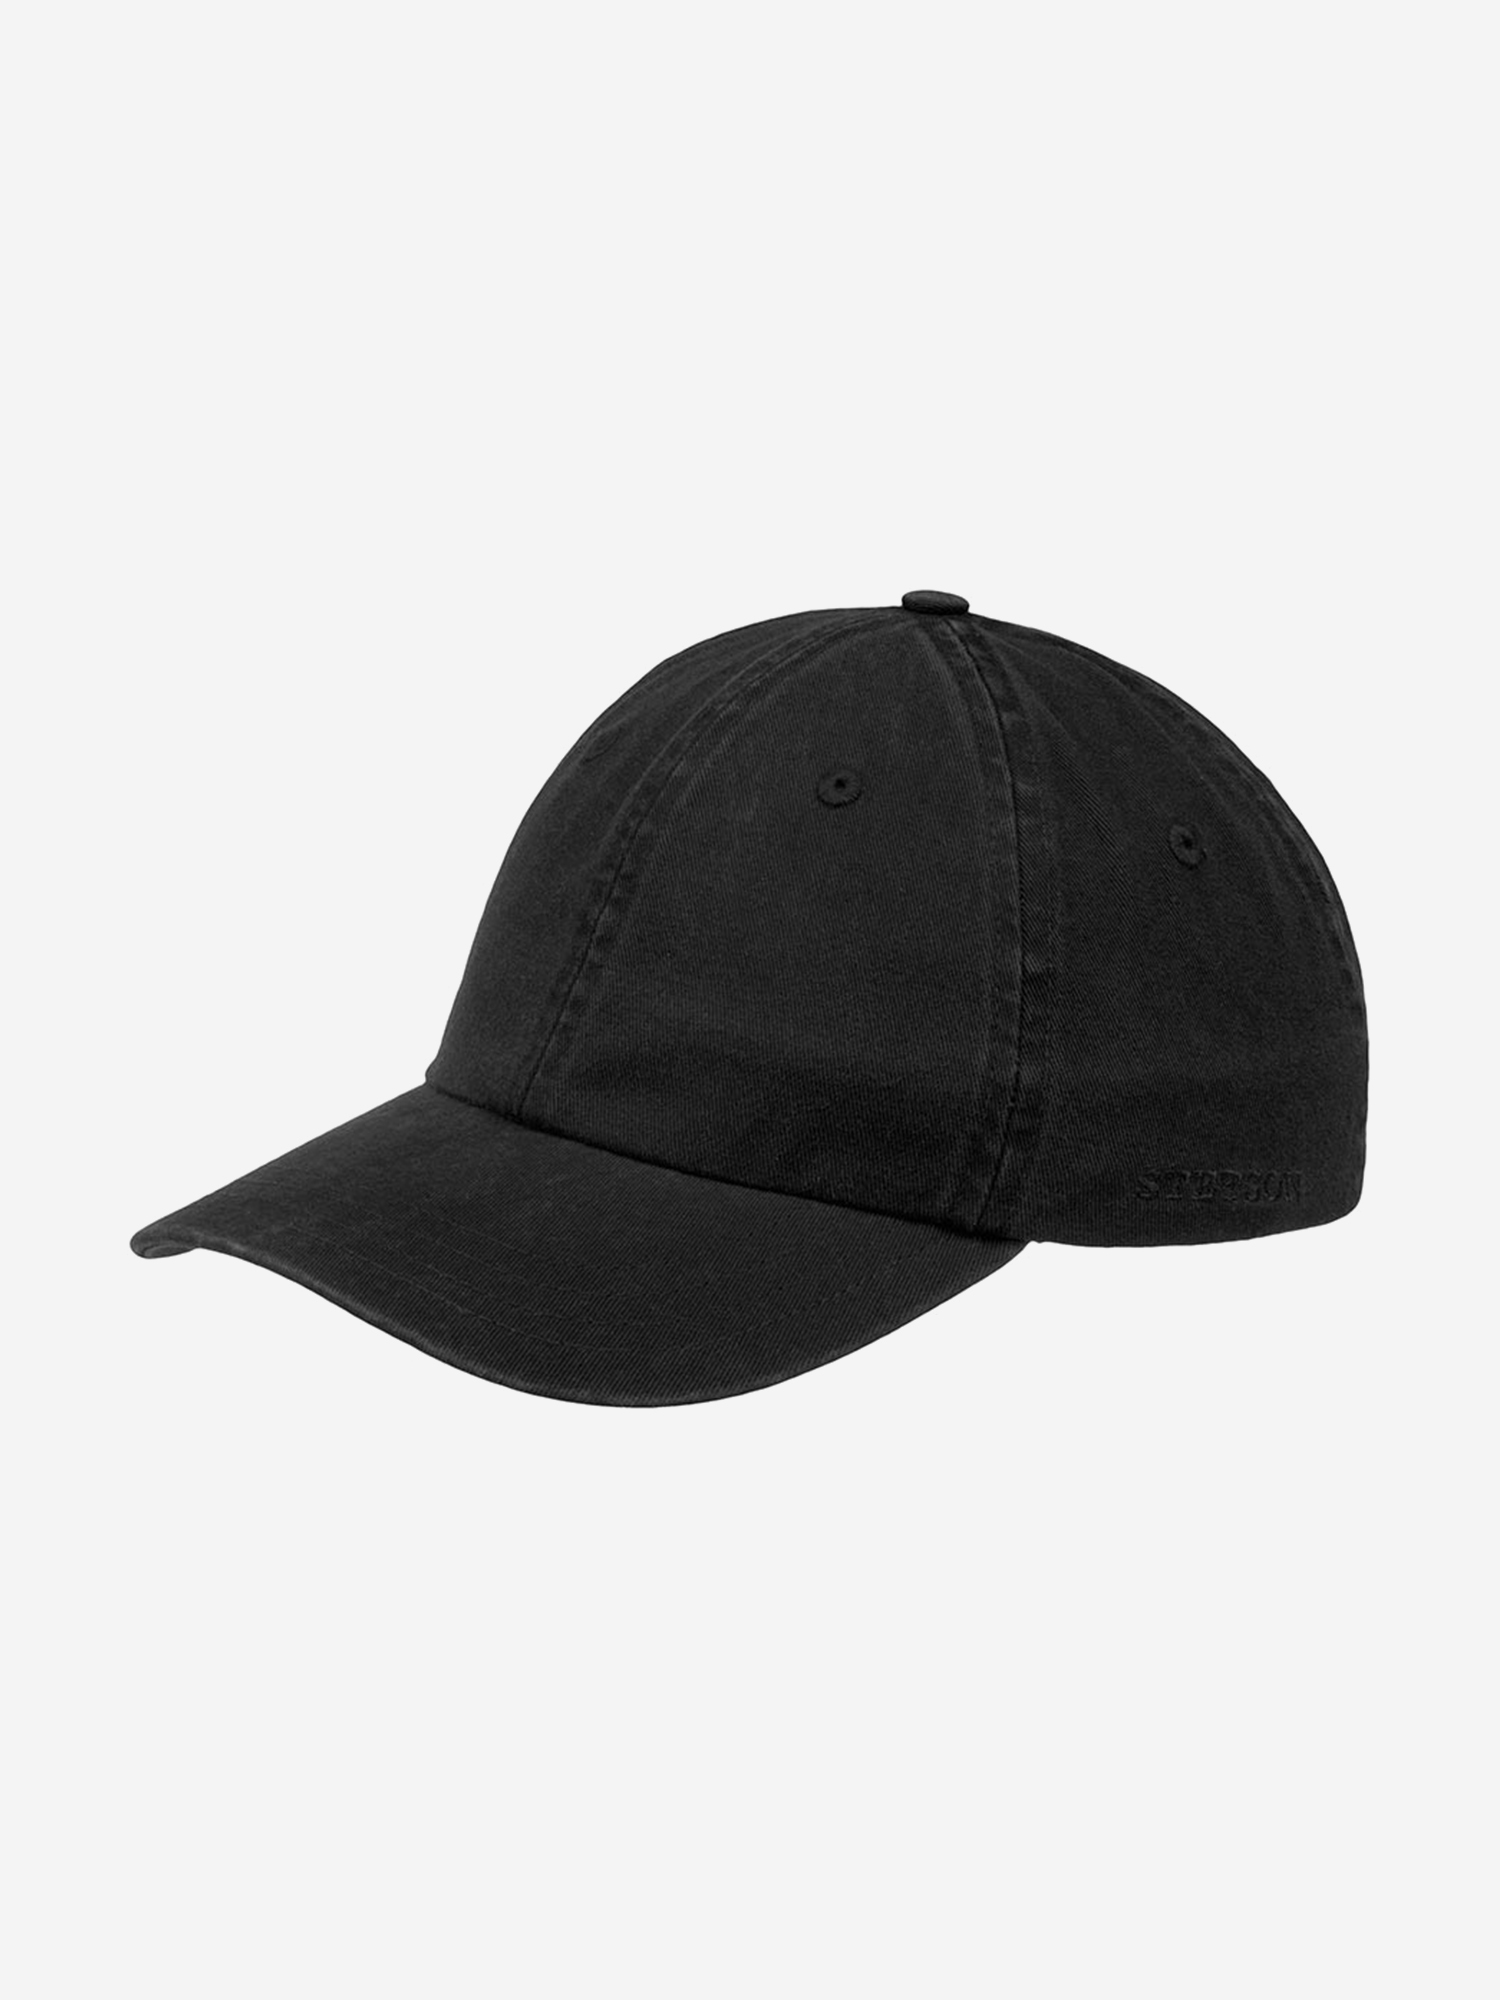 Бейсболка STETSON 7711101 BASEBALL CAP COTTON (черный), Черный